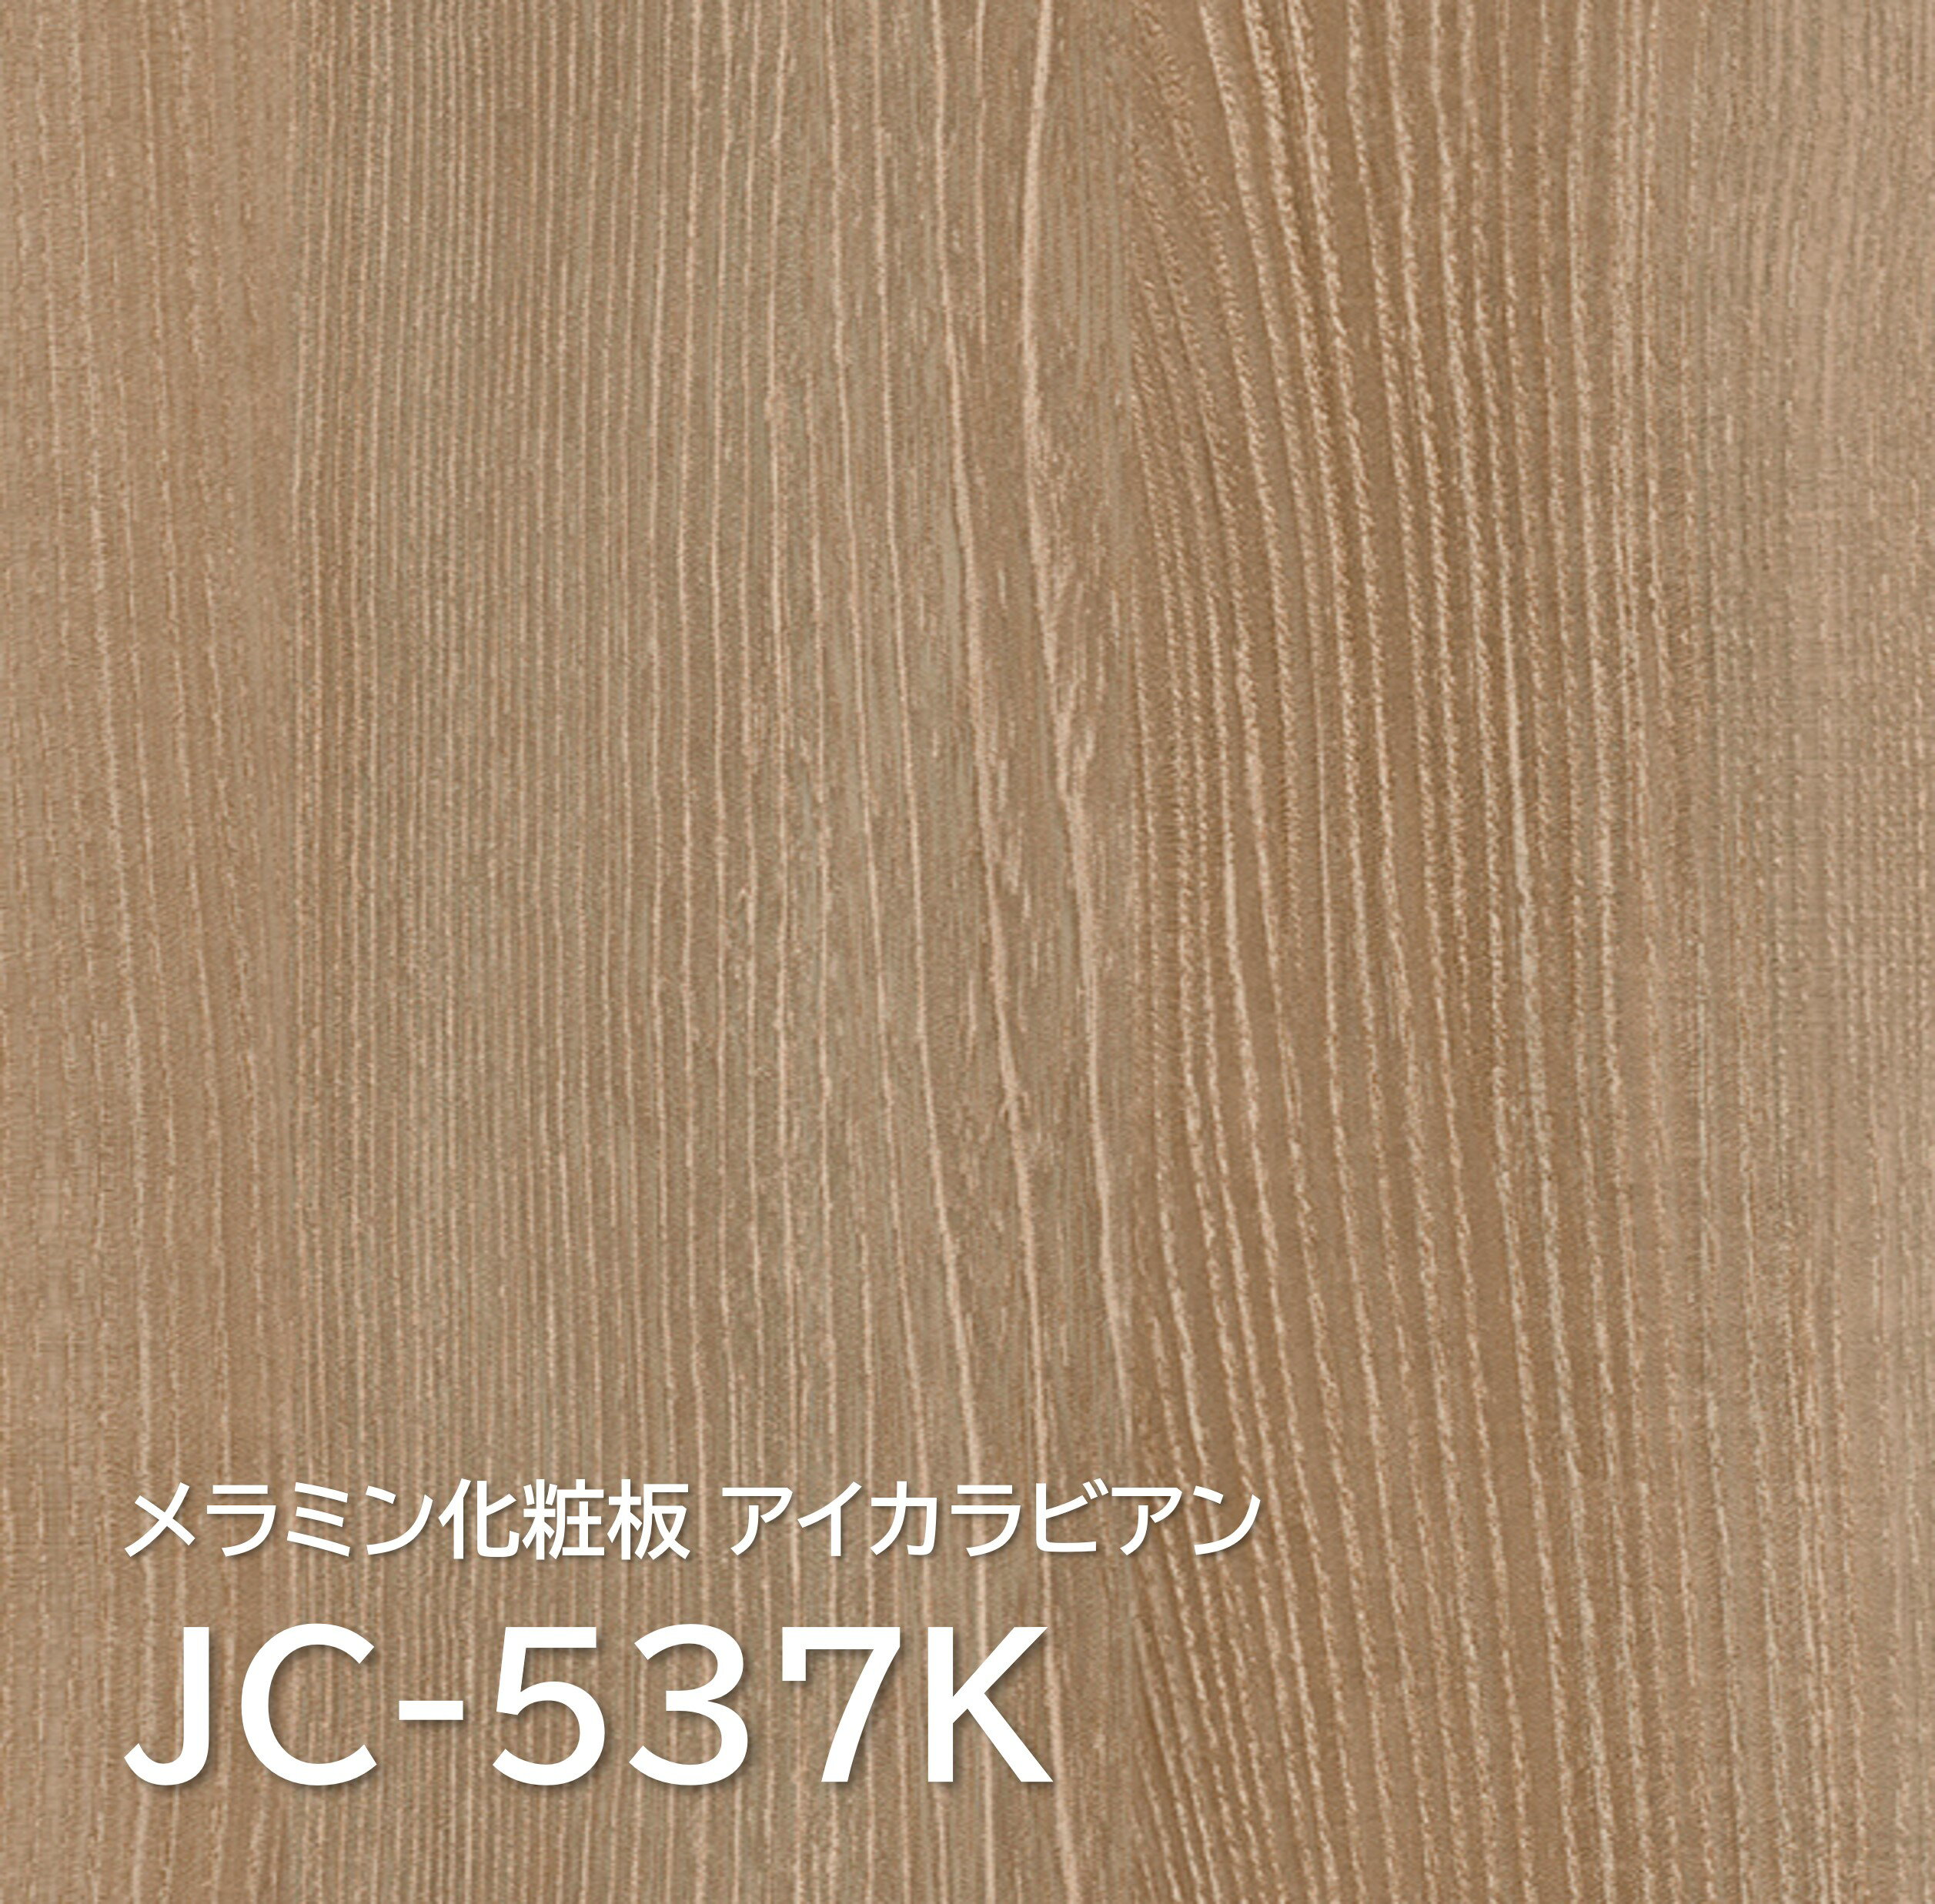 メラミン化粧板 JC-537K 4×8 0.95mm 1230×2450mm アイカラビアン エルム 柾目